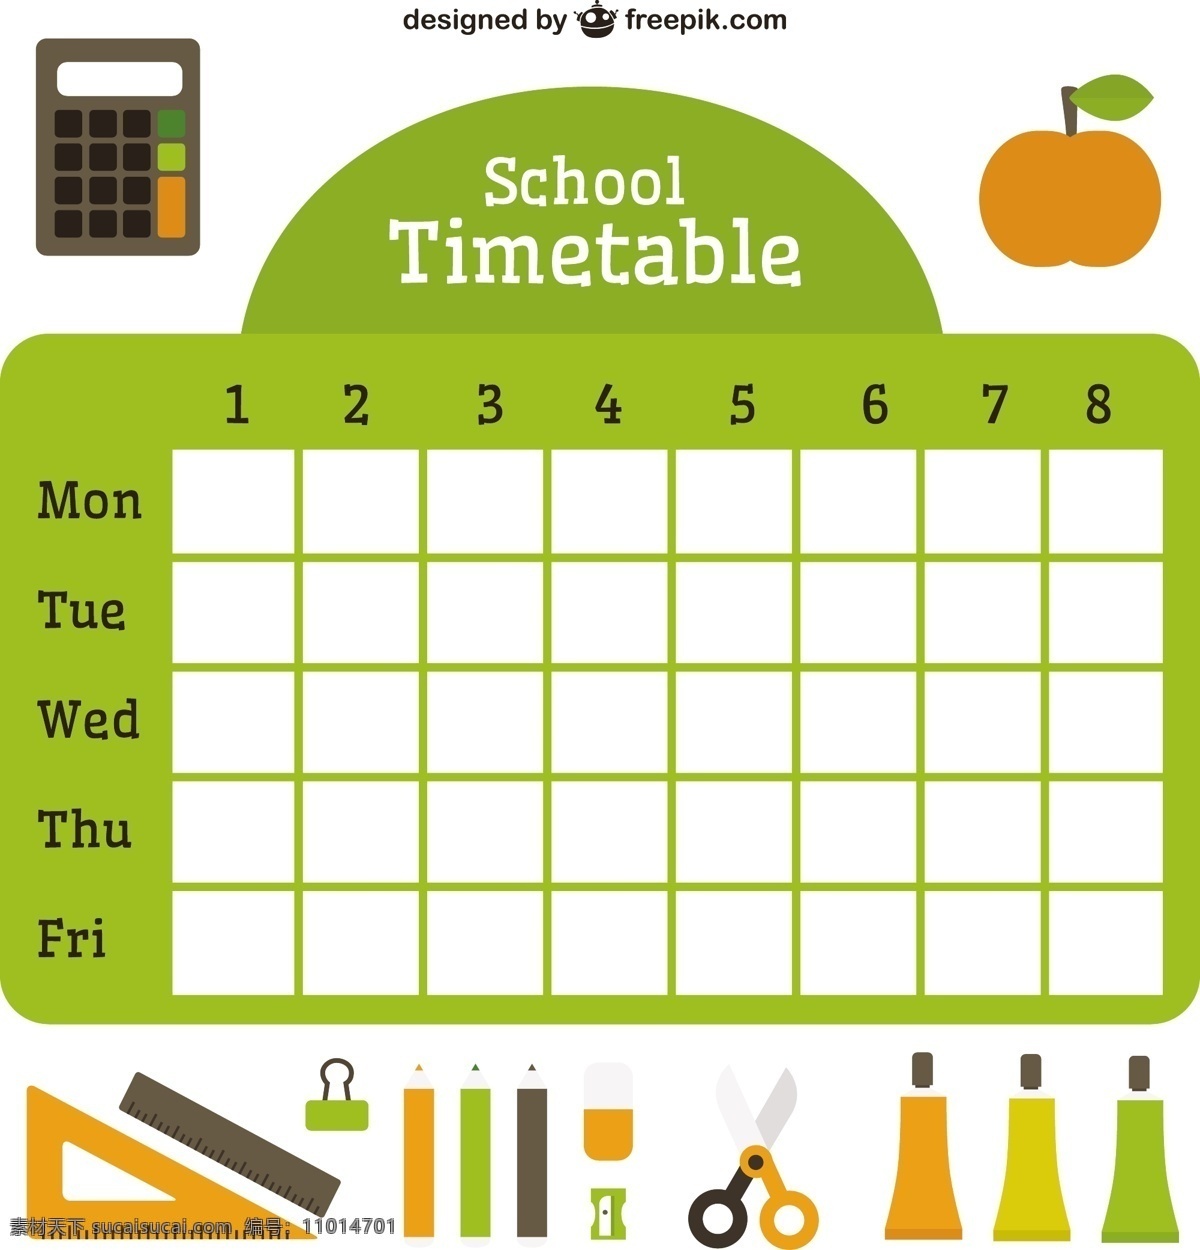 基本 配件 平面 学校 时间表 日历 模板 苹果 平板 时间 铅笔 数字 剪刀 平面设计 计划 计算器 尺子 日期 日程 日记 附件 天 白色